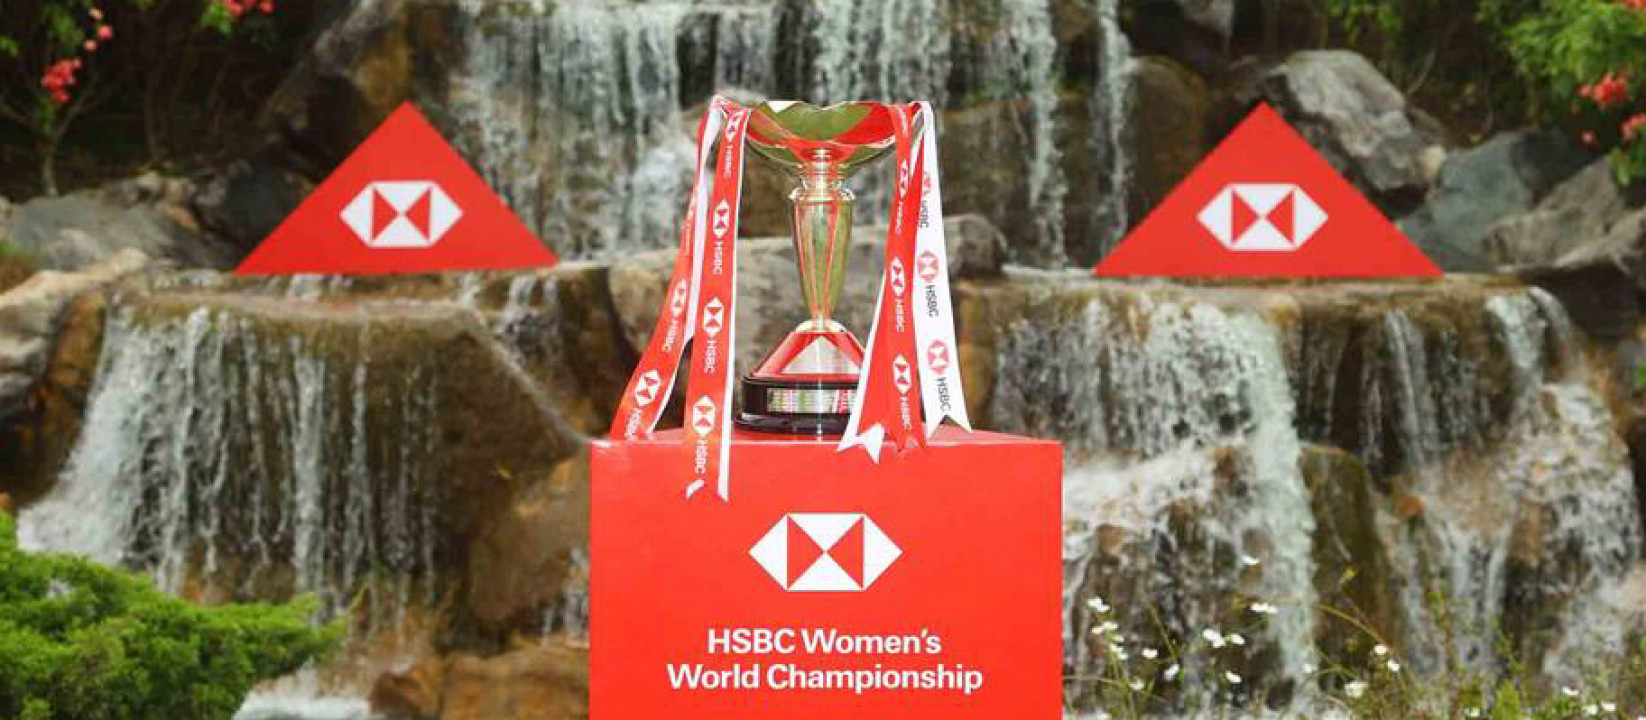 HSBC Women’s World Championship có dần mất đi sức hấp dẫn?